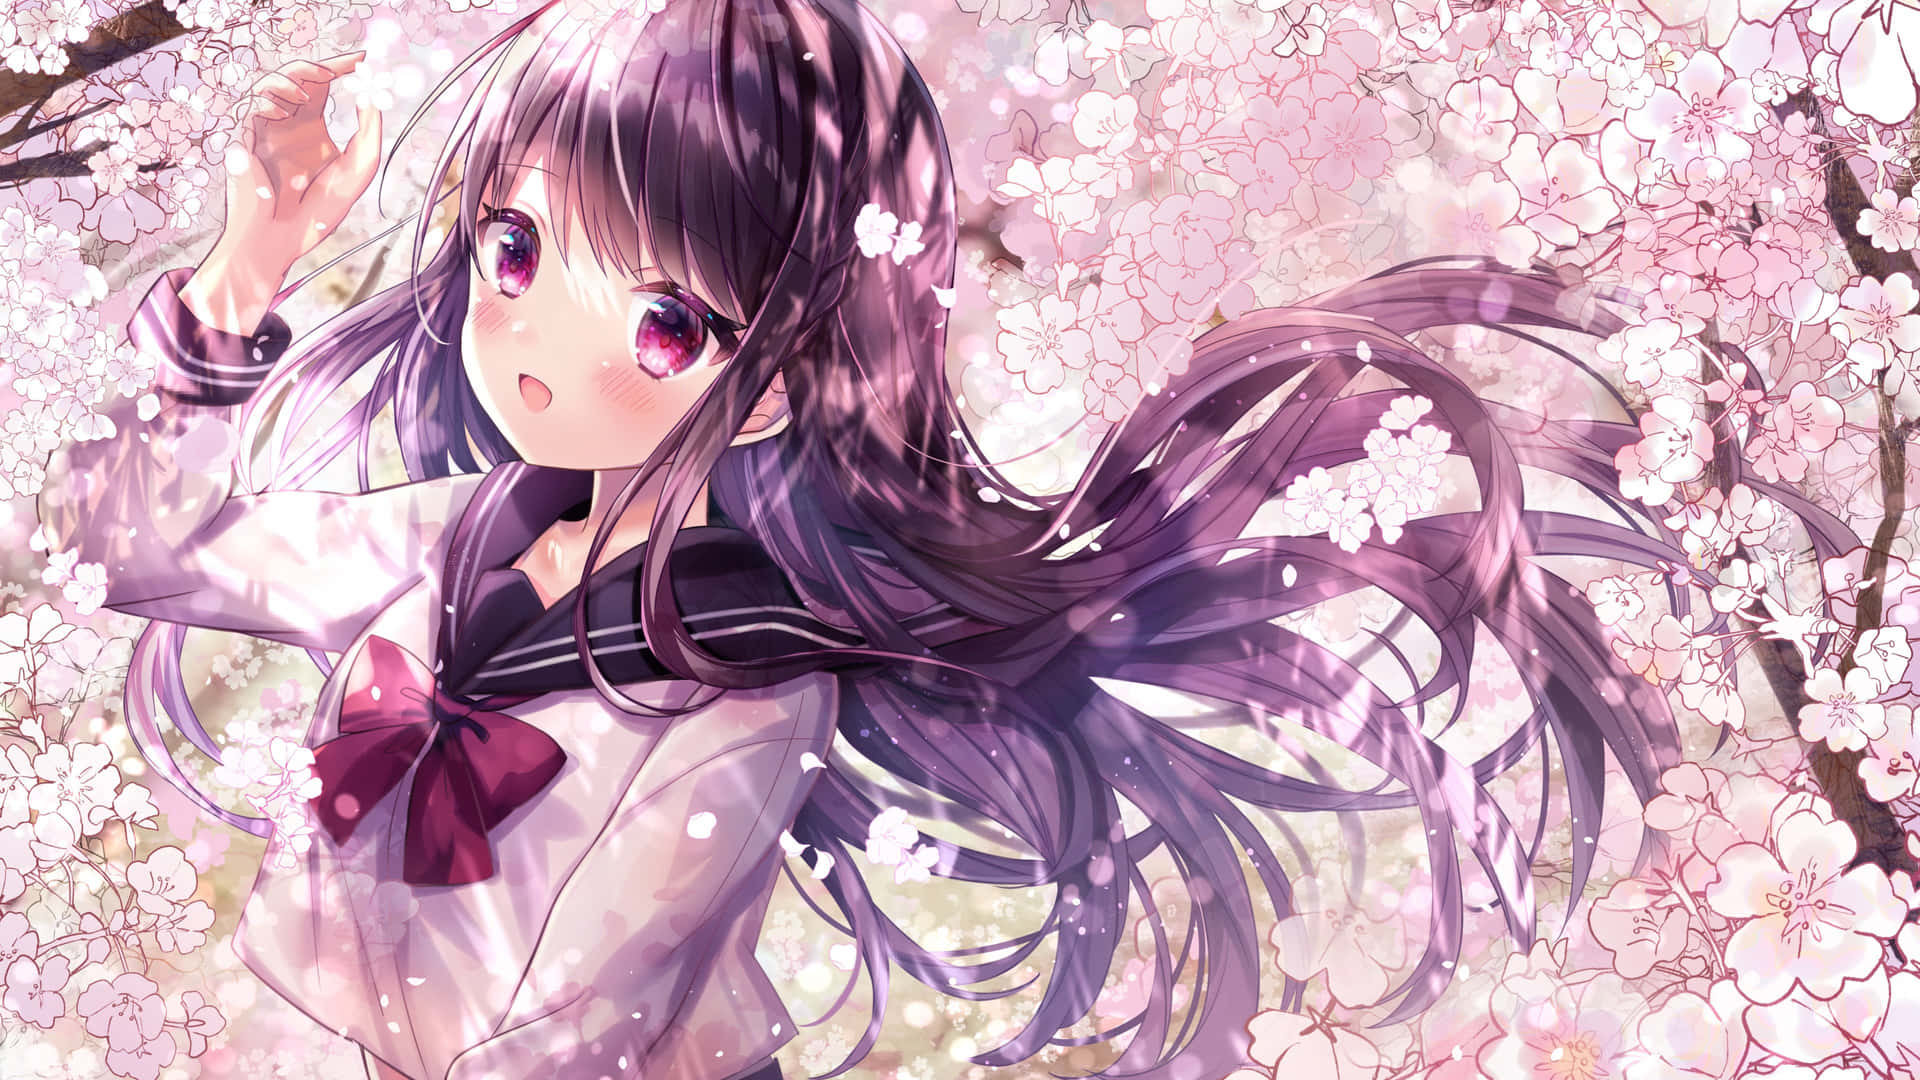 Cherry Blossom Anime Girl.jpg Wallpaper